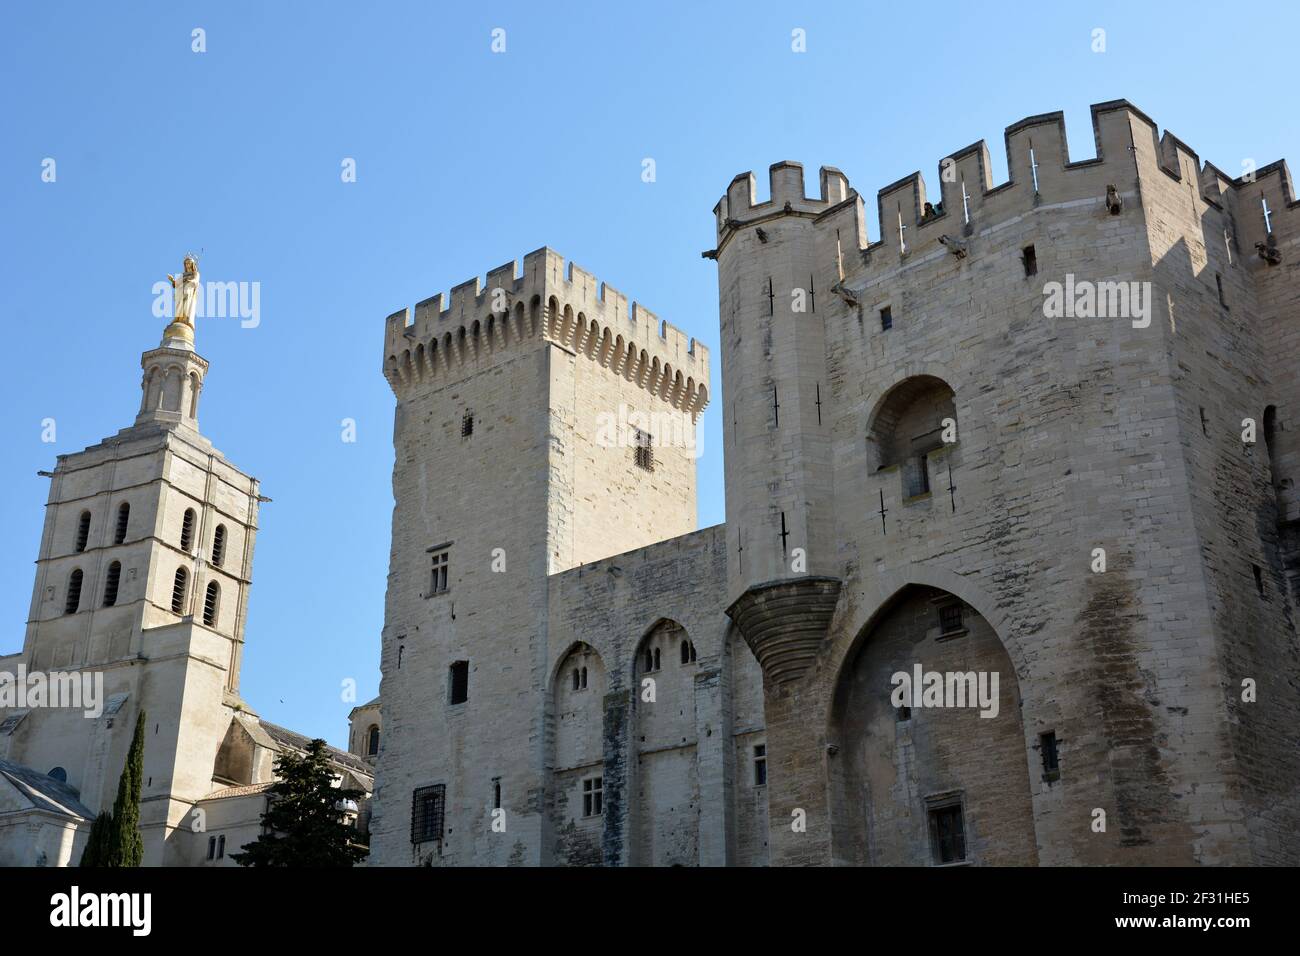 France, Avignon, façade du Palais des Papes, forteresse et palais la résidence papale fut au XIVe siècle le siège du christianisme occidental. Banque D'Images